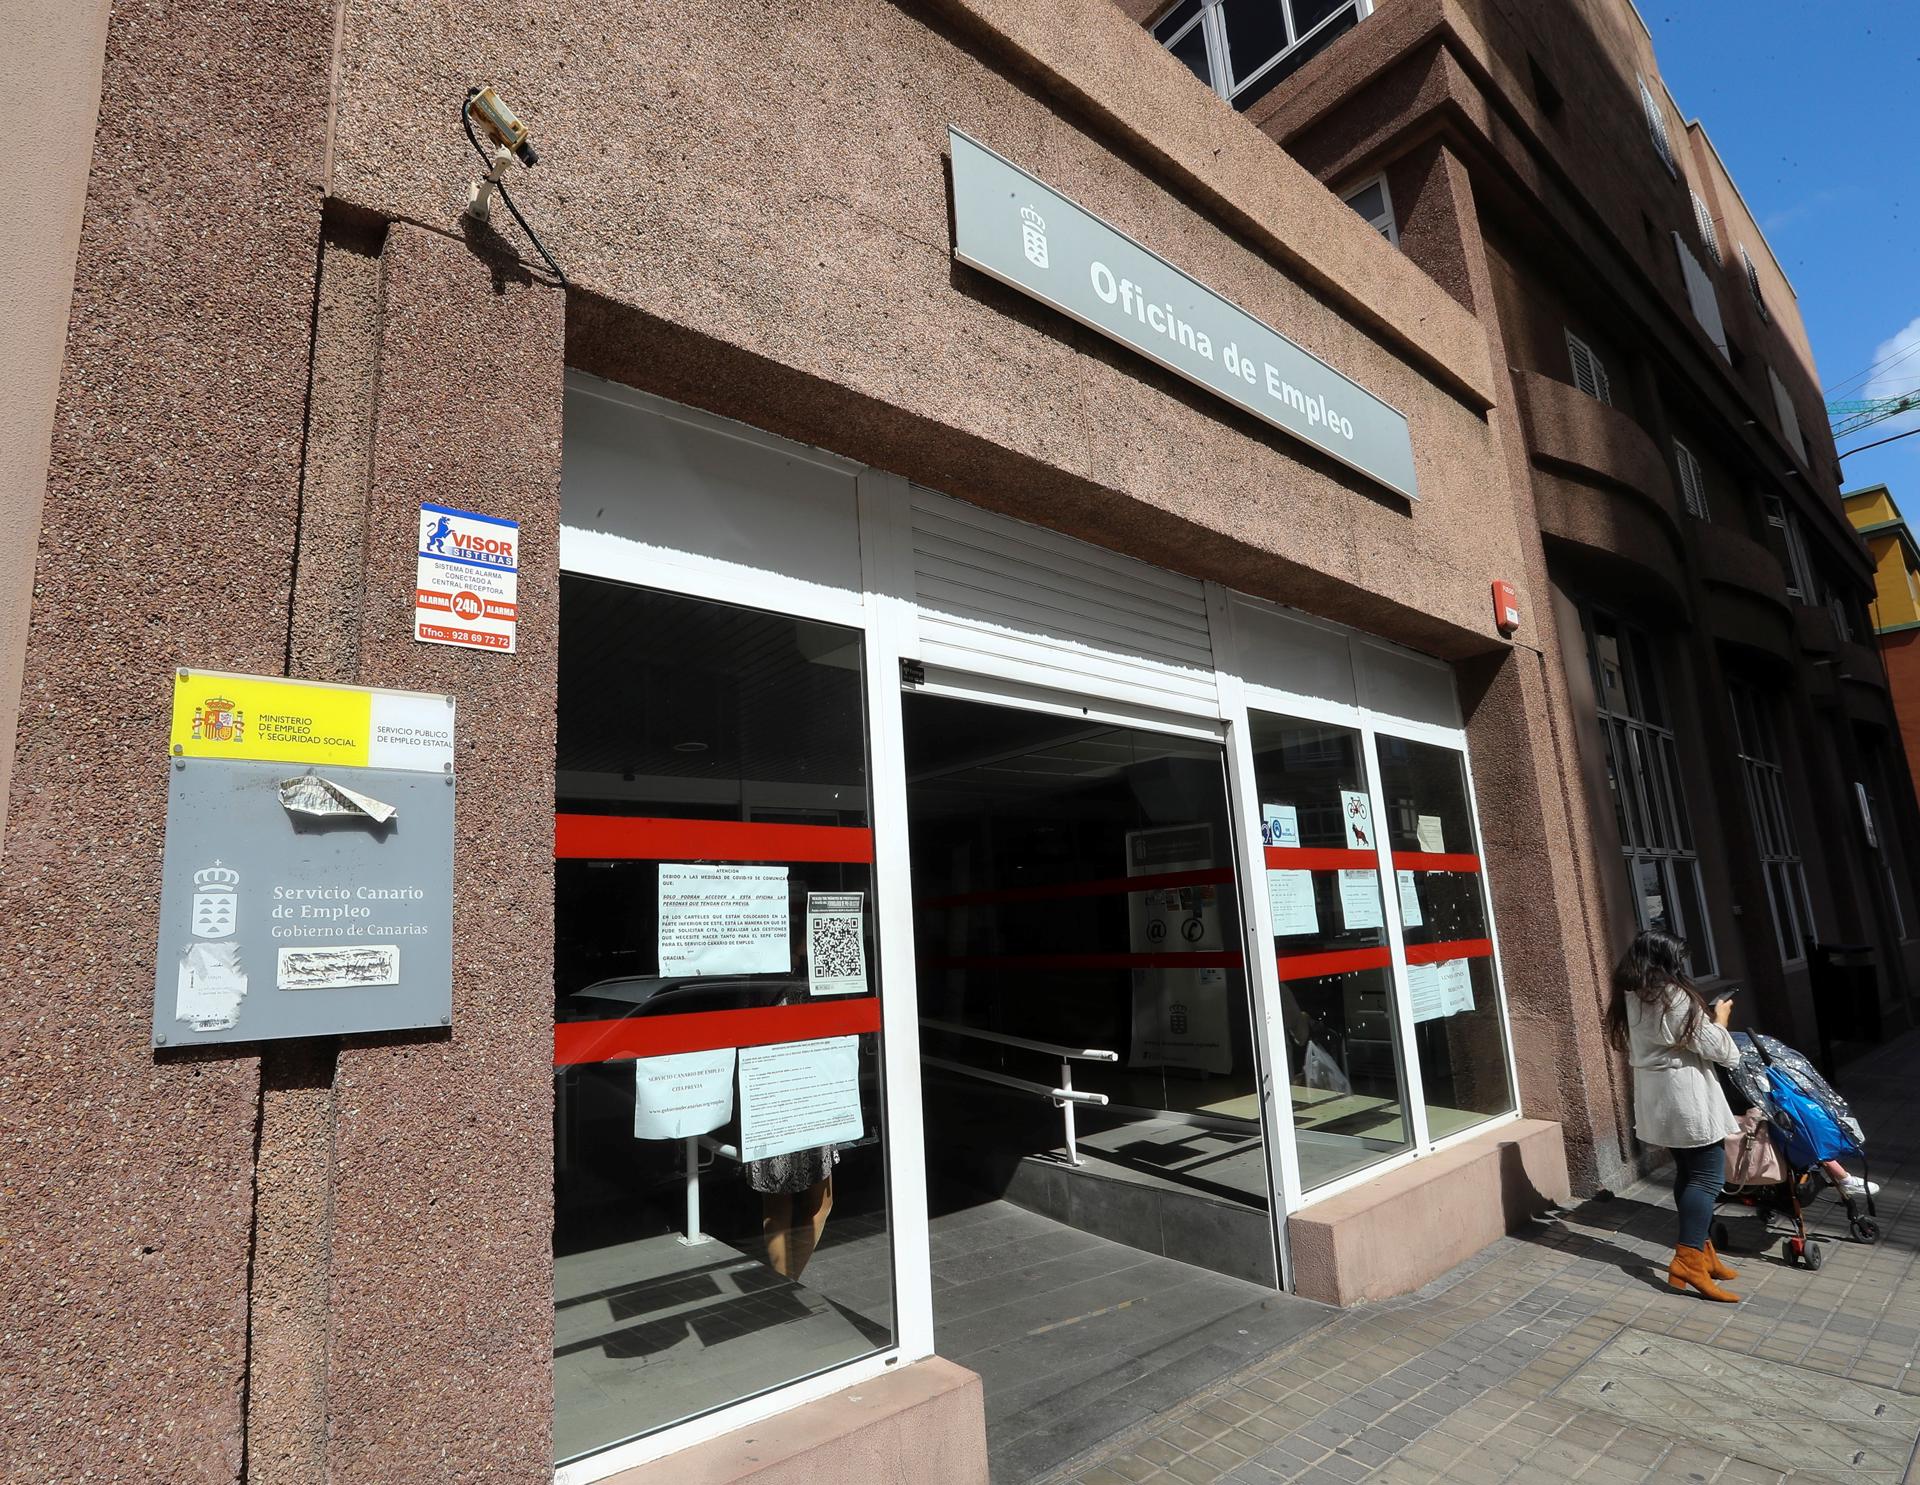 Foto de archivo de una oficina de empleo en Las Palmas de Gran Canaria. EFE/Elvira Urquijo A.